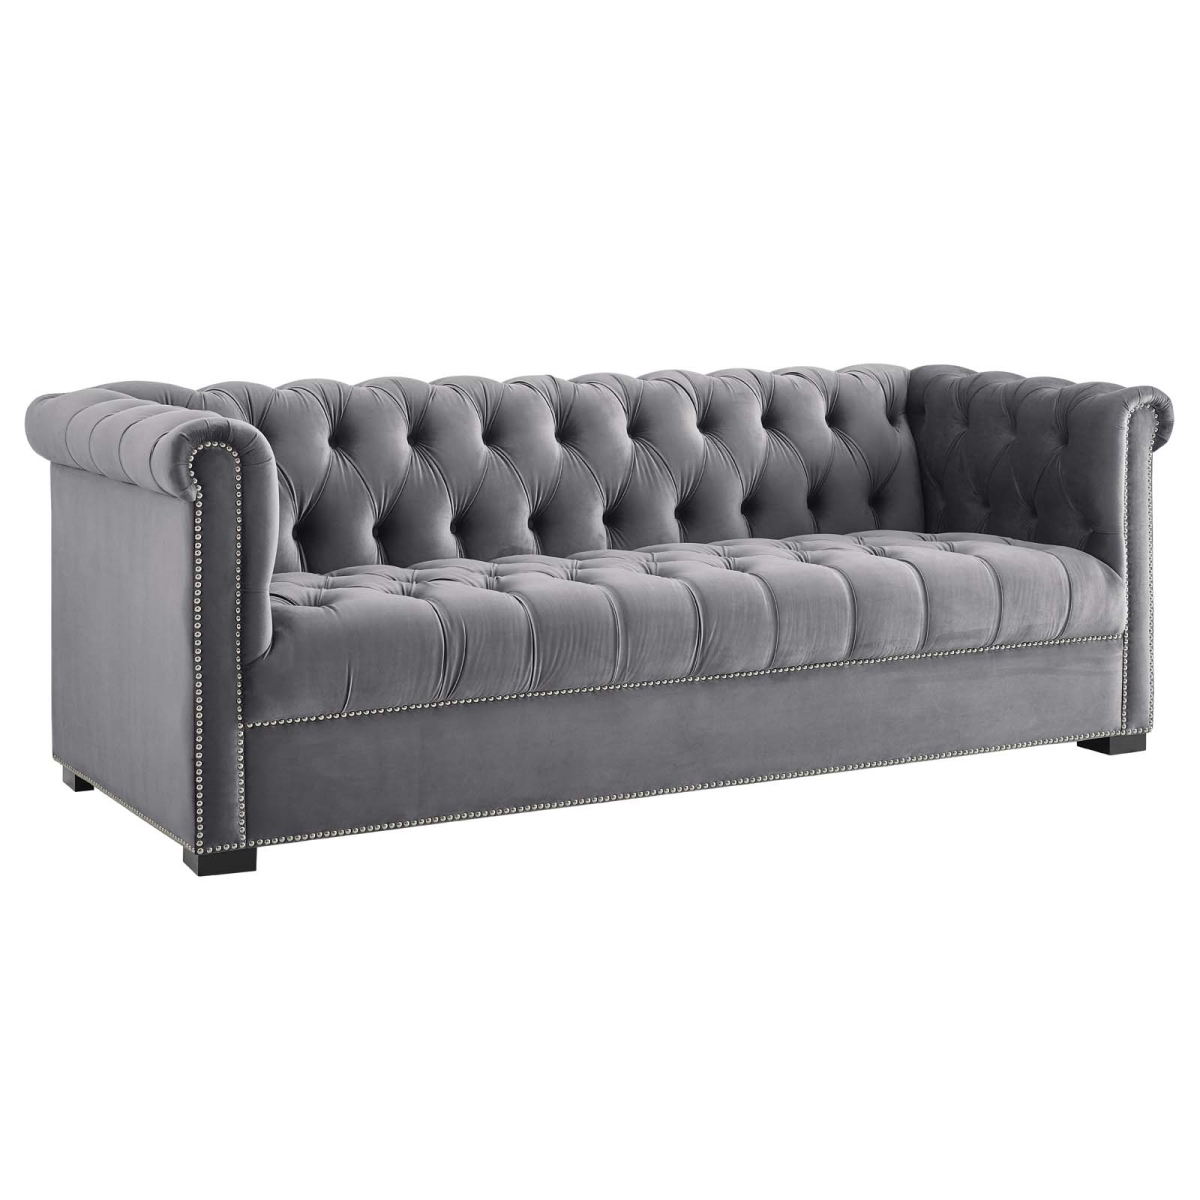 Eei-3064-gry Heritage Upholstered Velvet Sofa - Gray, 30.5 X 86 X 35 In.